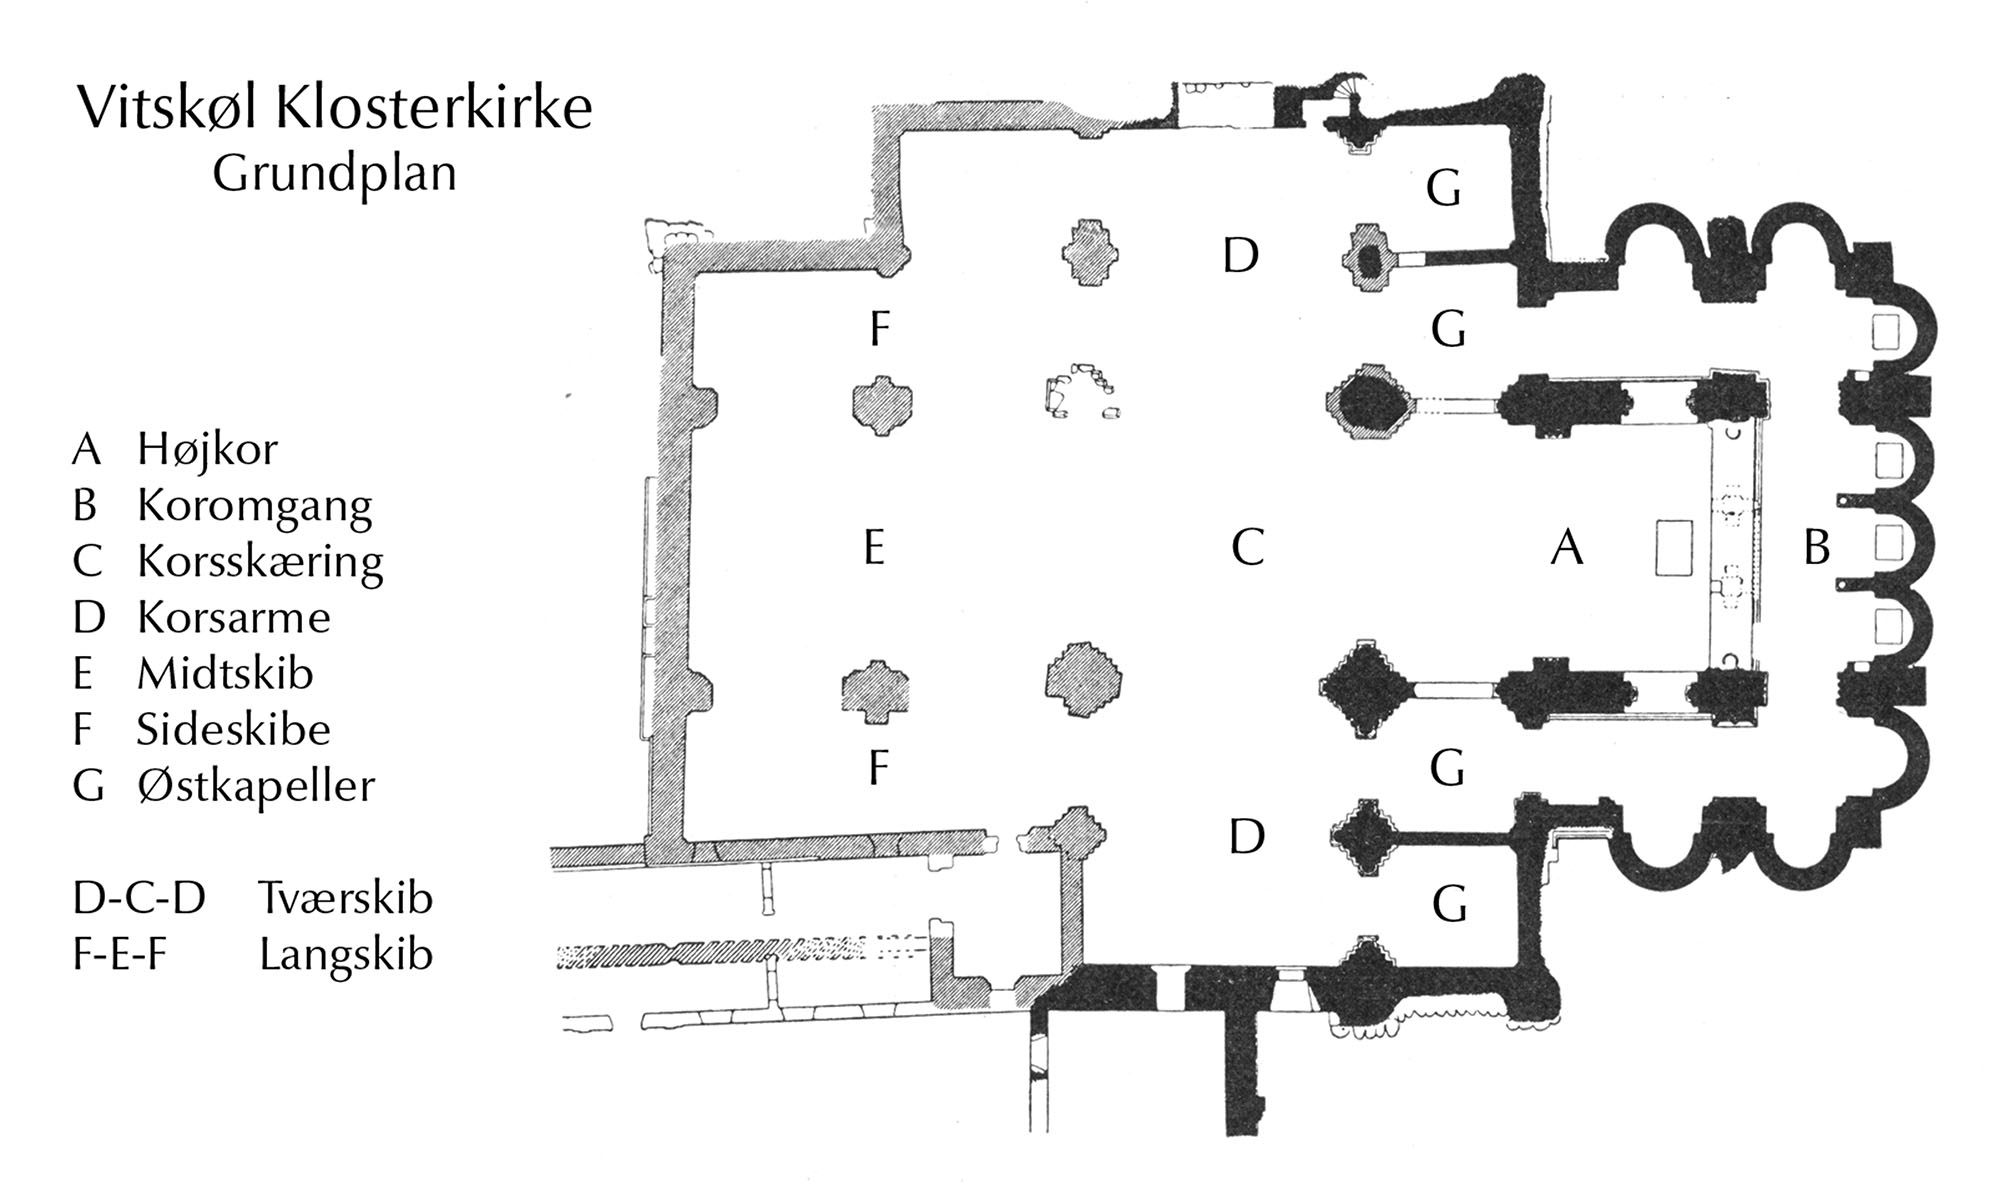 Vitskøl klosterkirke